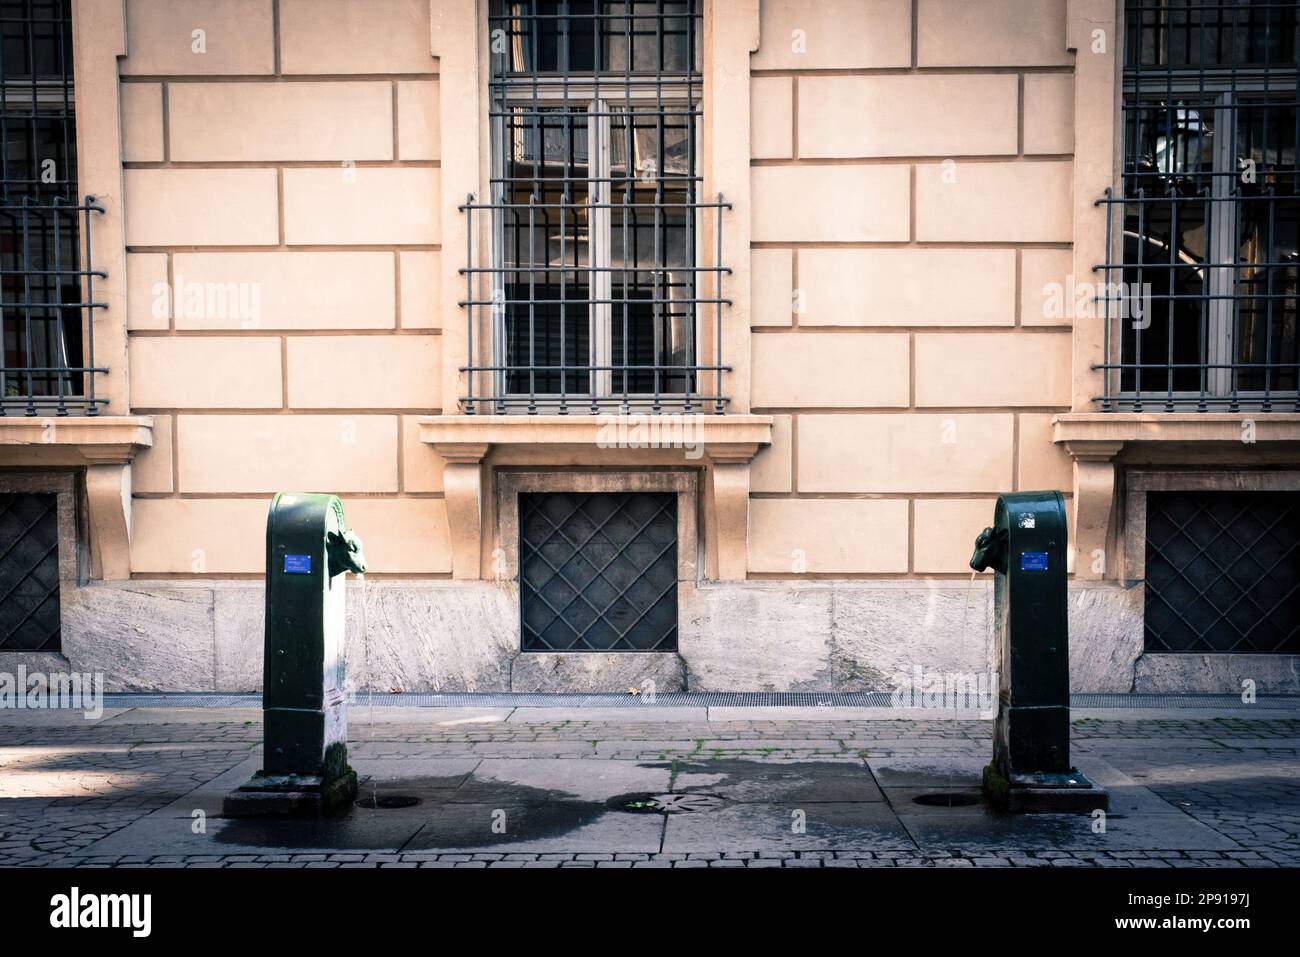 Italia: Torino. Immagine della fontana doppia Toret tipica della città. Andrea Pinna/Alamy Foto Stock